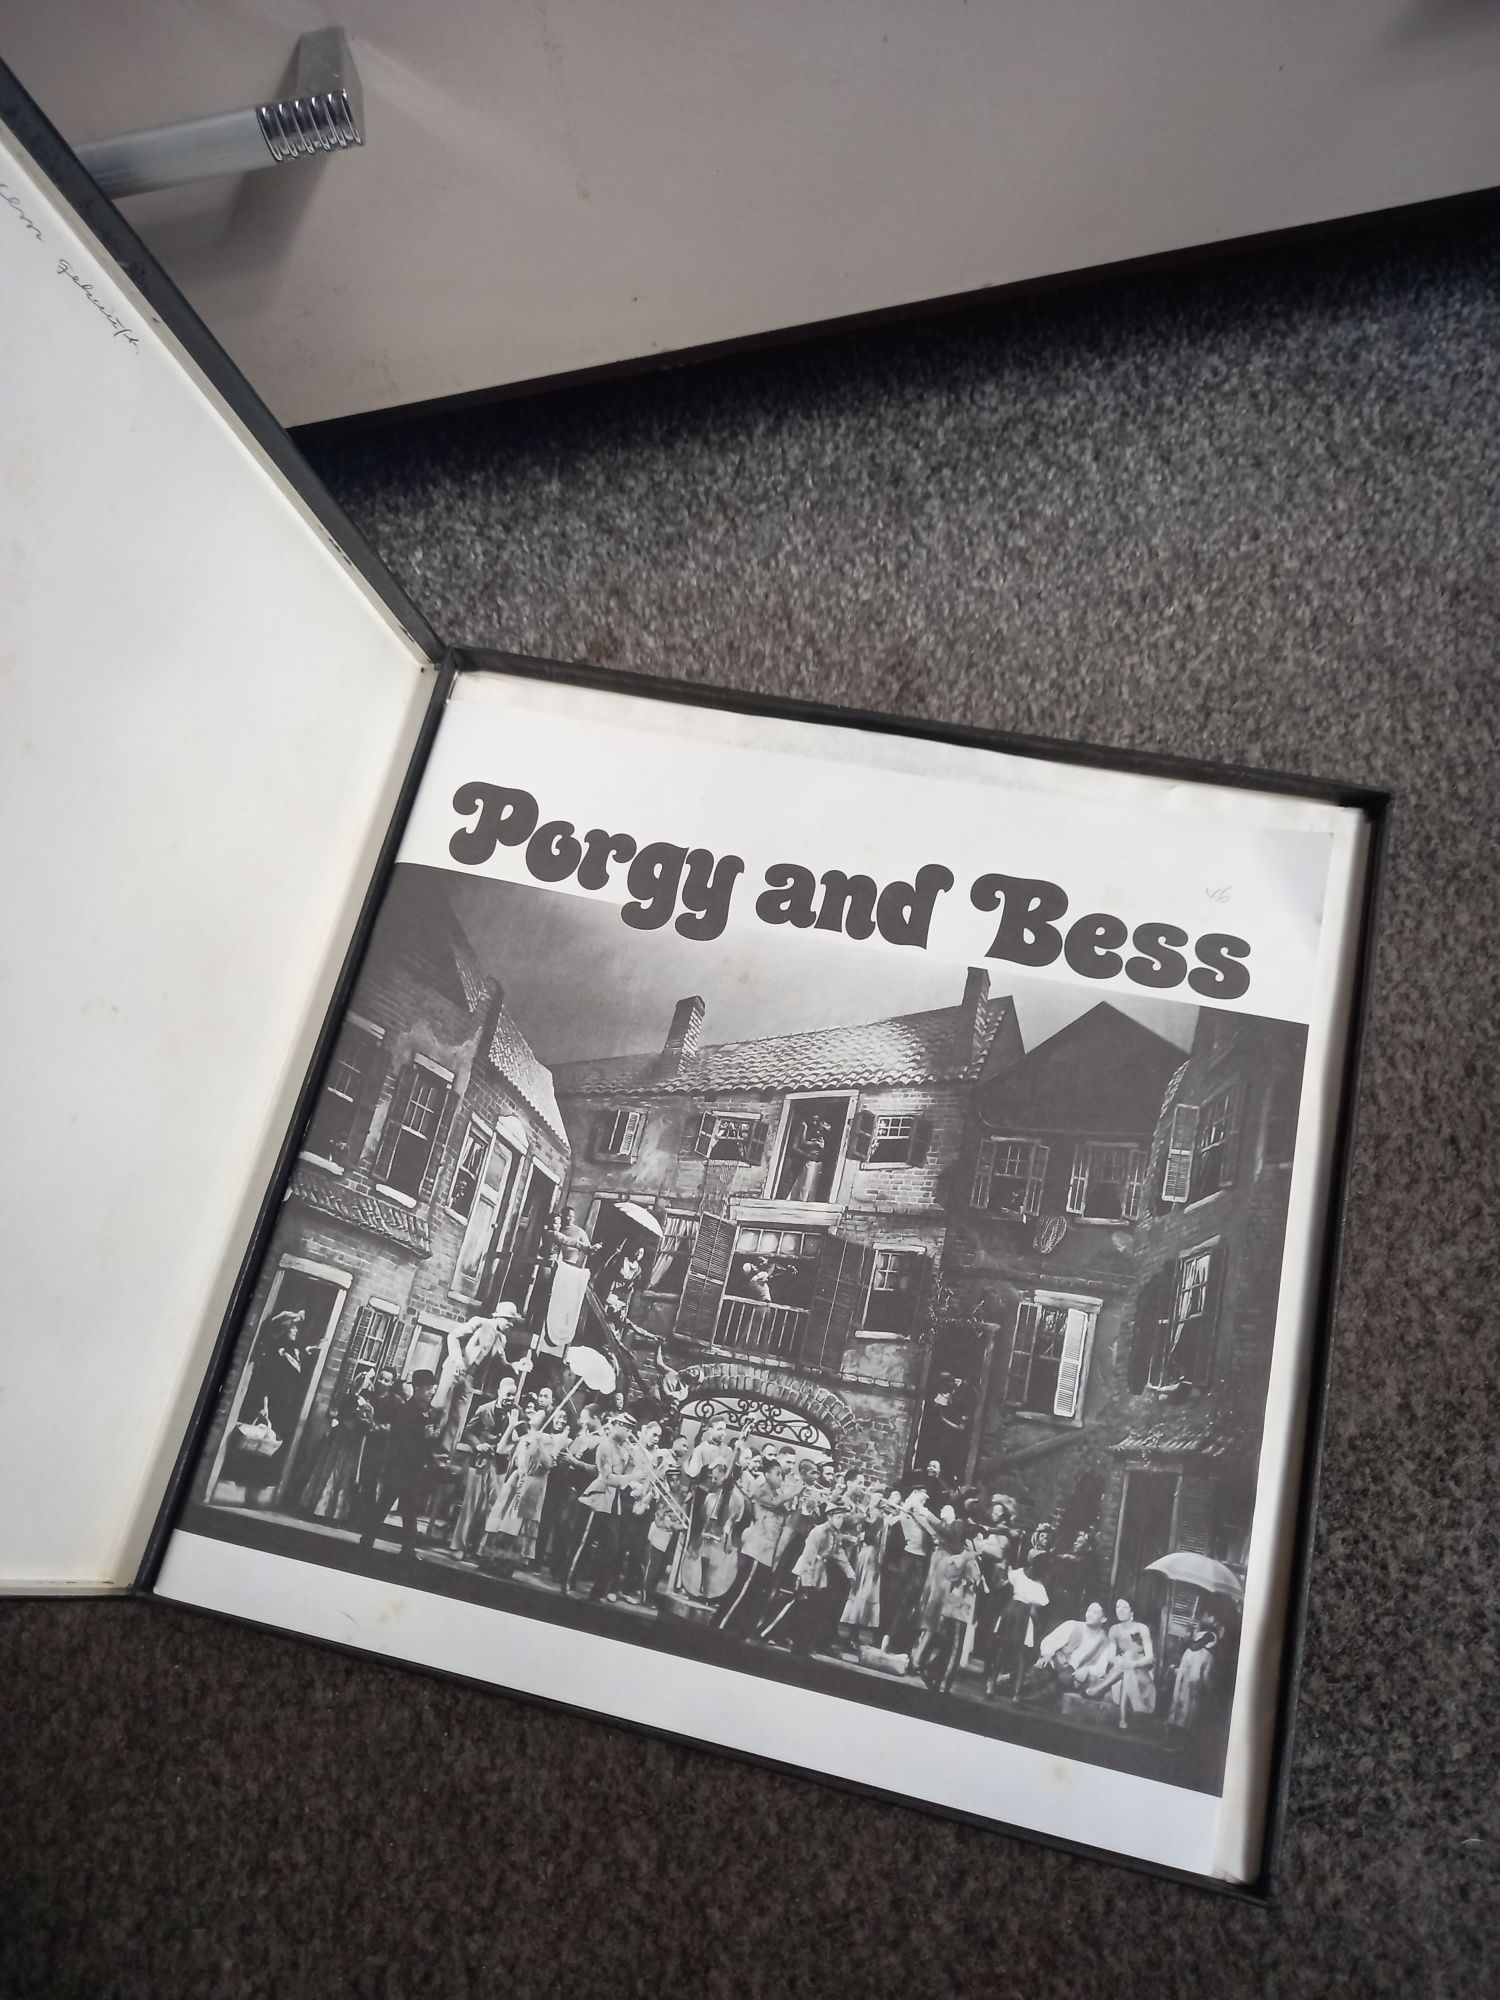 Porgy and Bees płyty winylowe kolekcjonerskie vintage